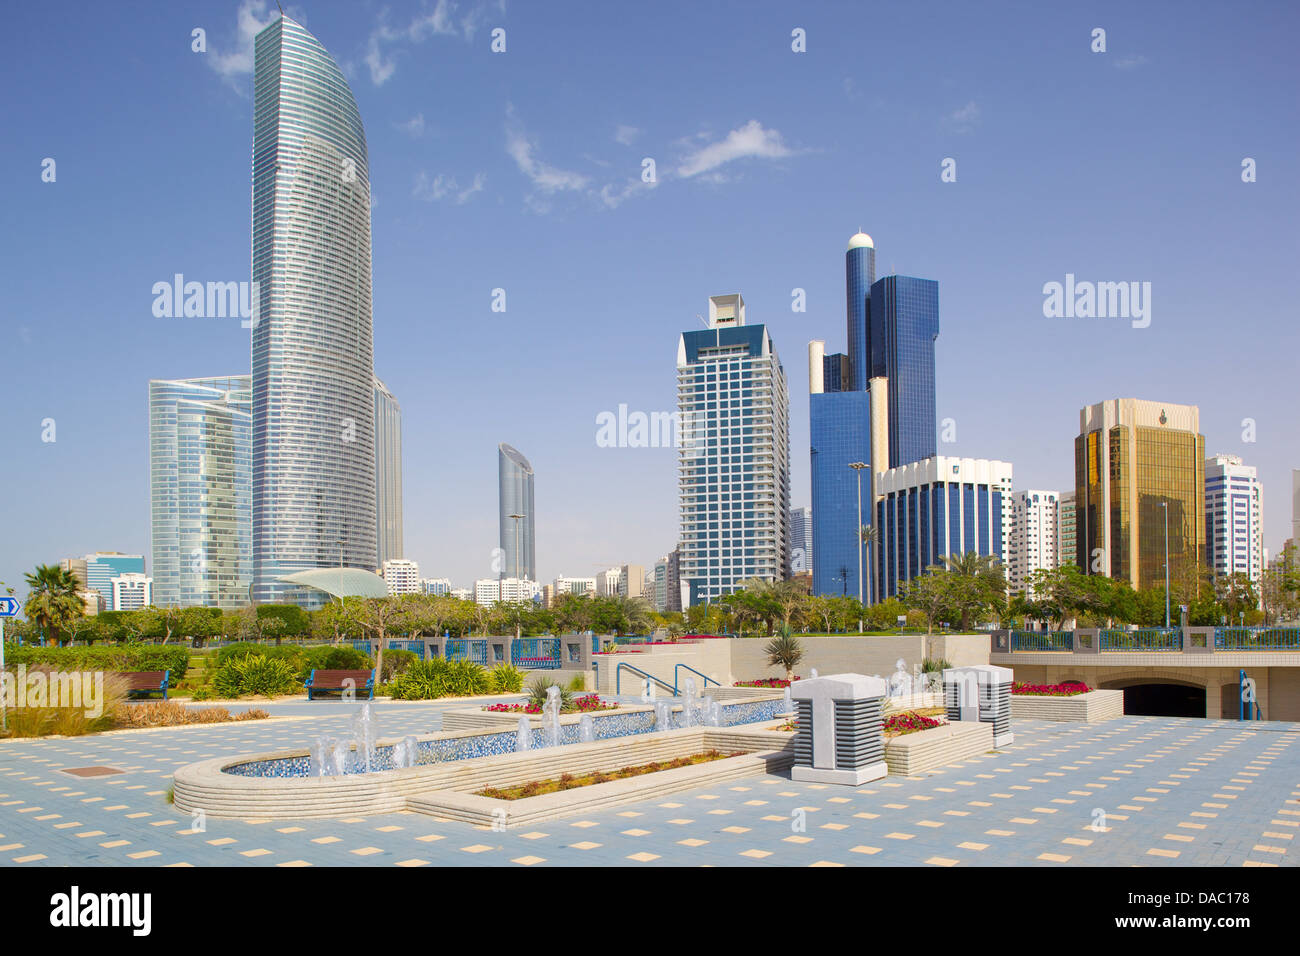 La arquitectura contemporánea a lo largo de la Corniche, Abu Dhabi, Emiratos Árabes Unidos, Oriente Medio Foto de stock